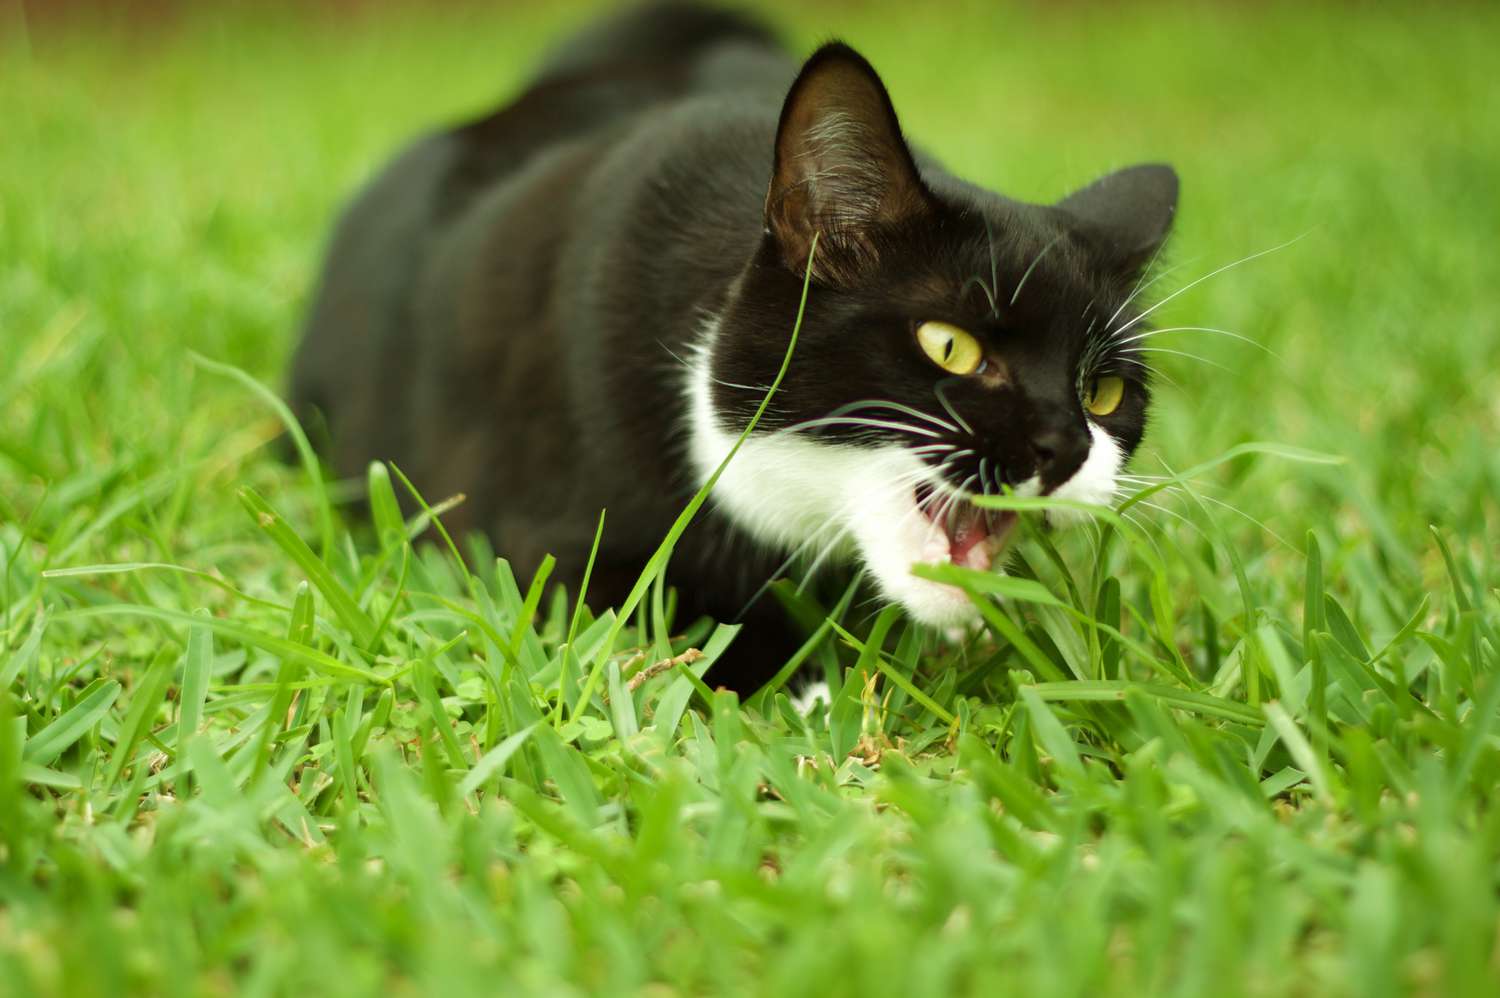 Kitten eating grass